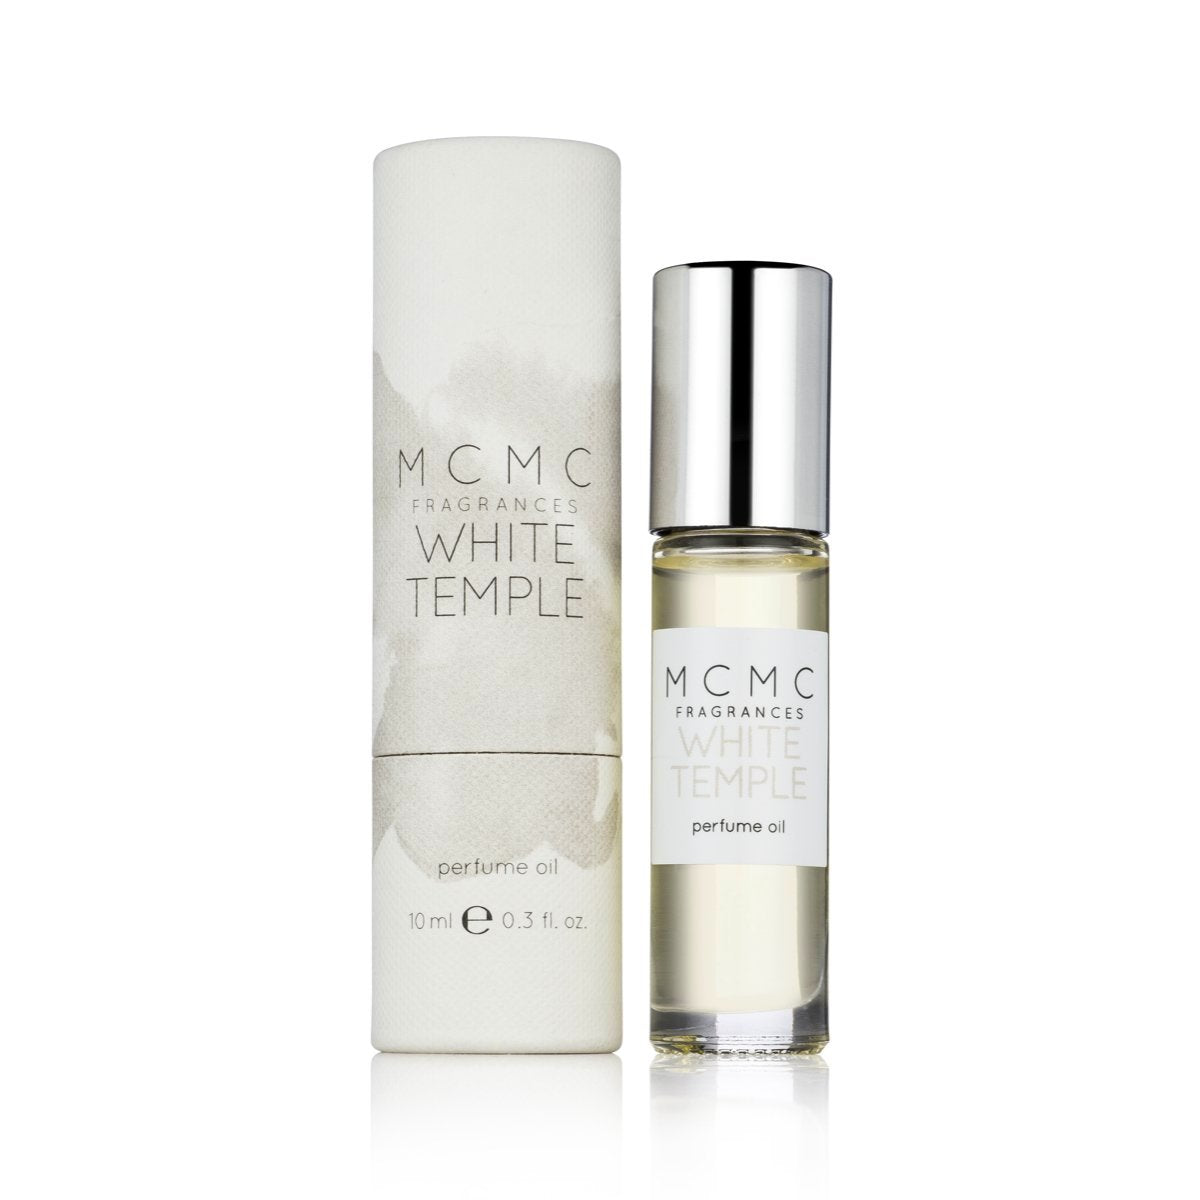 WHITE TEMPLE 10ml perfume oil